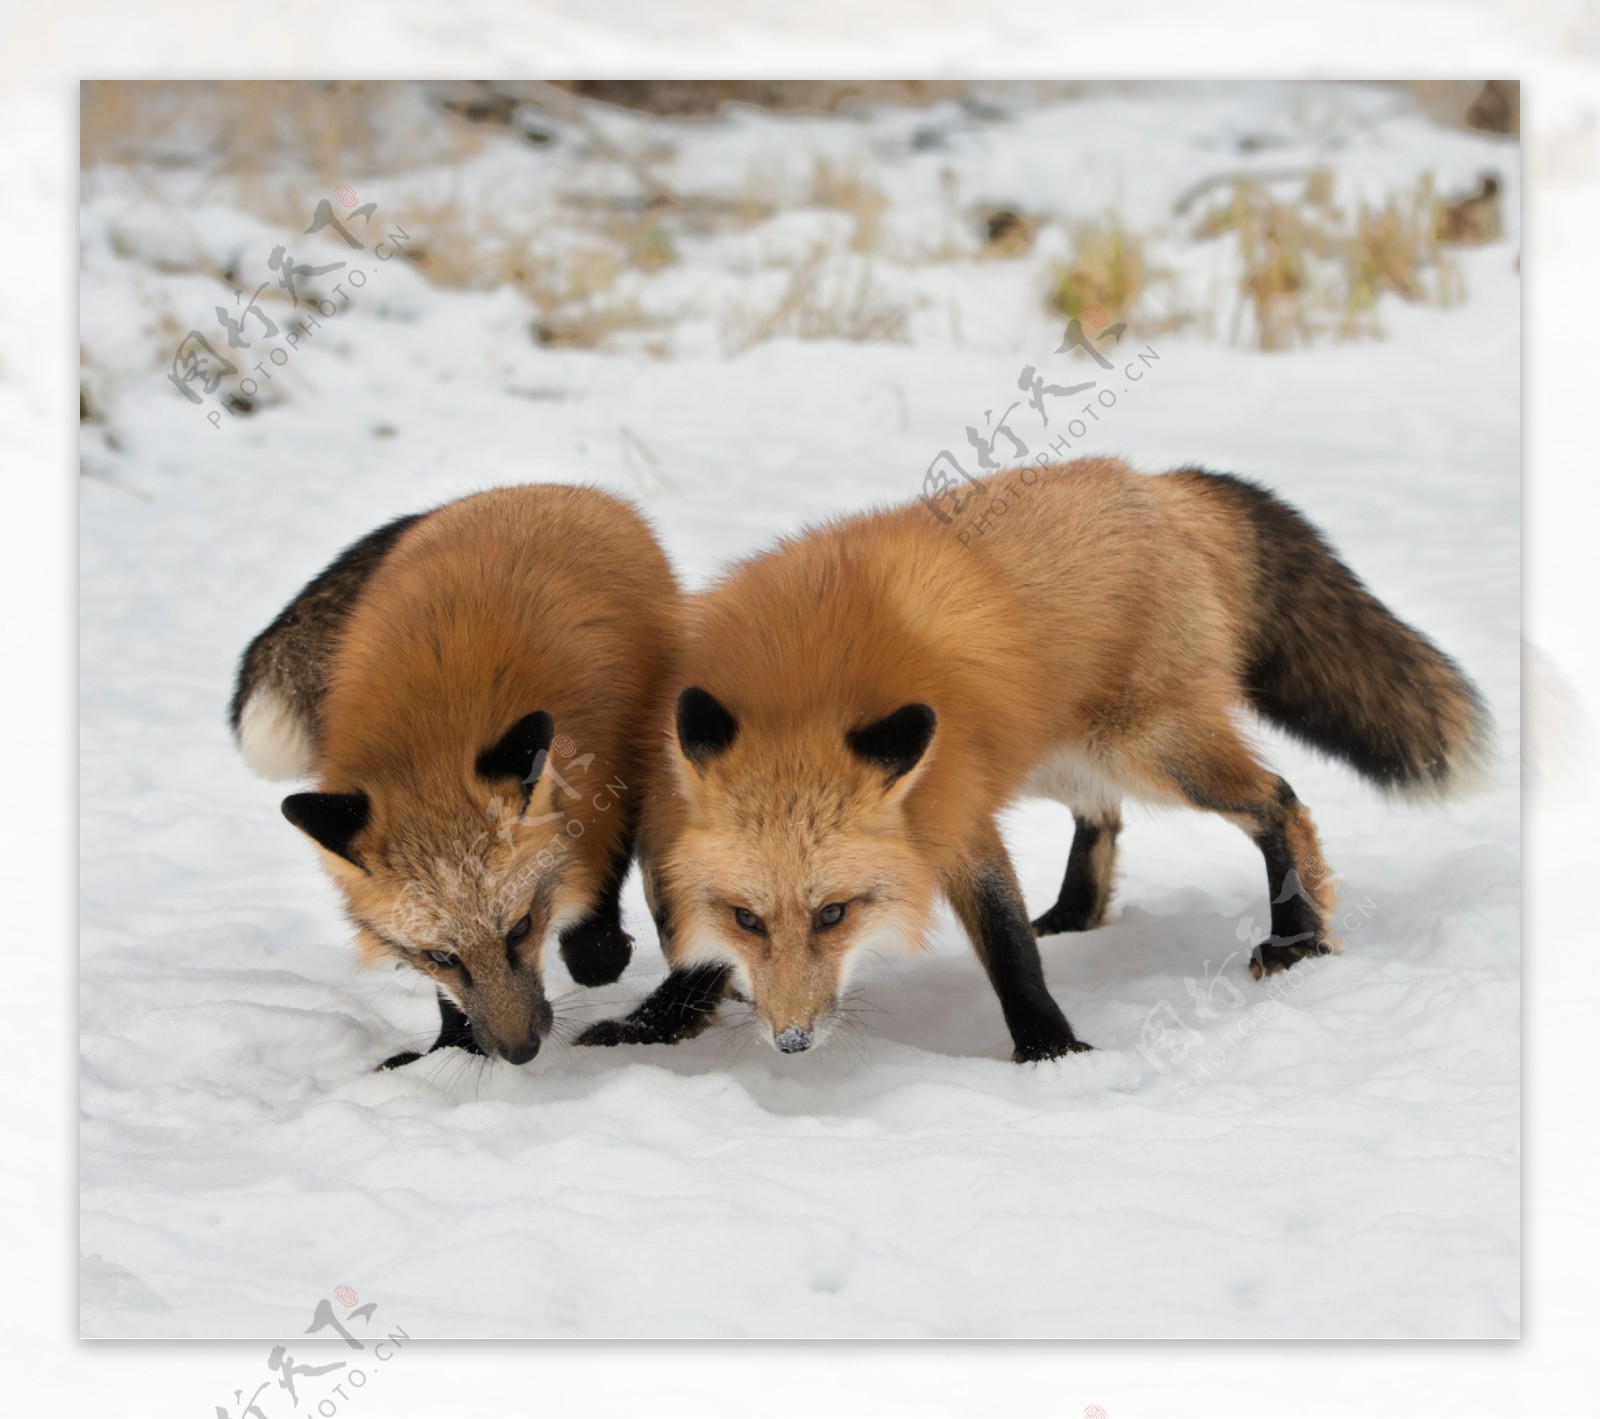 两只狐狸